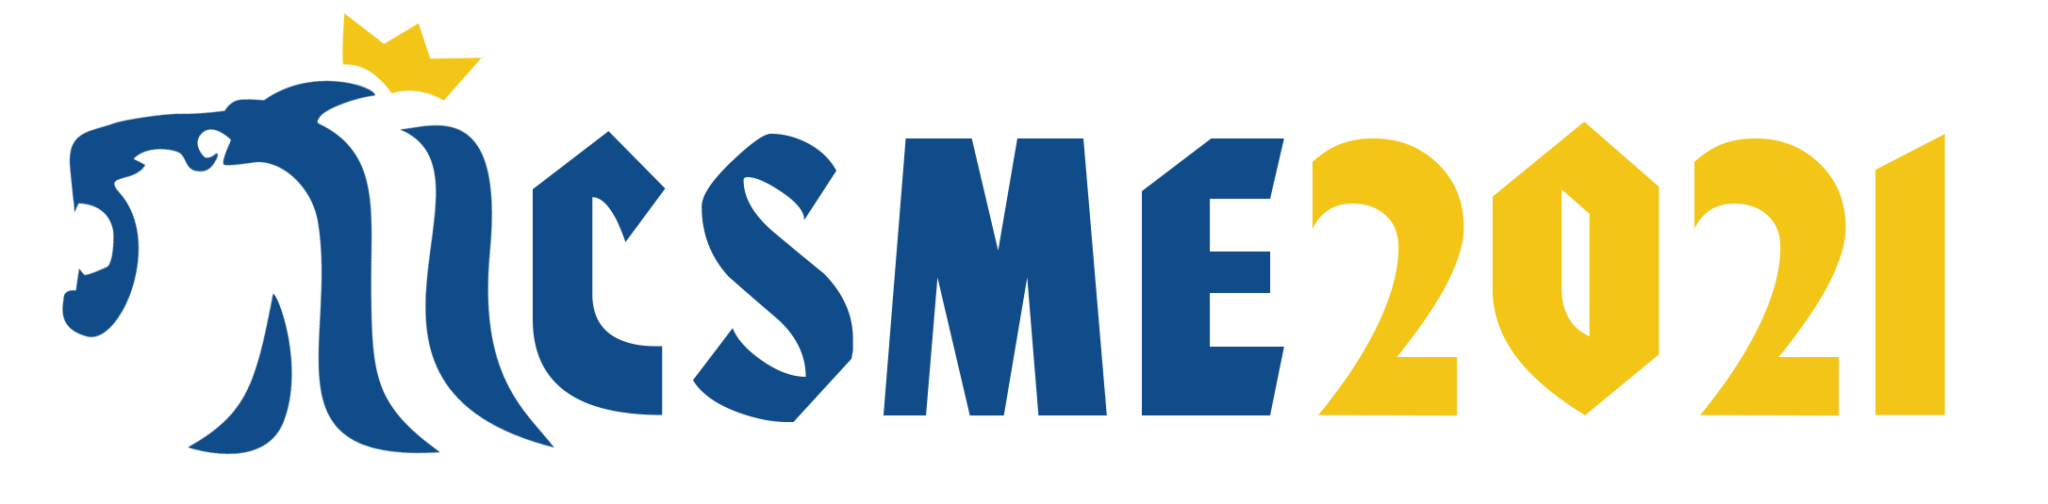 Logotipo del ICSME